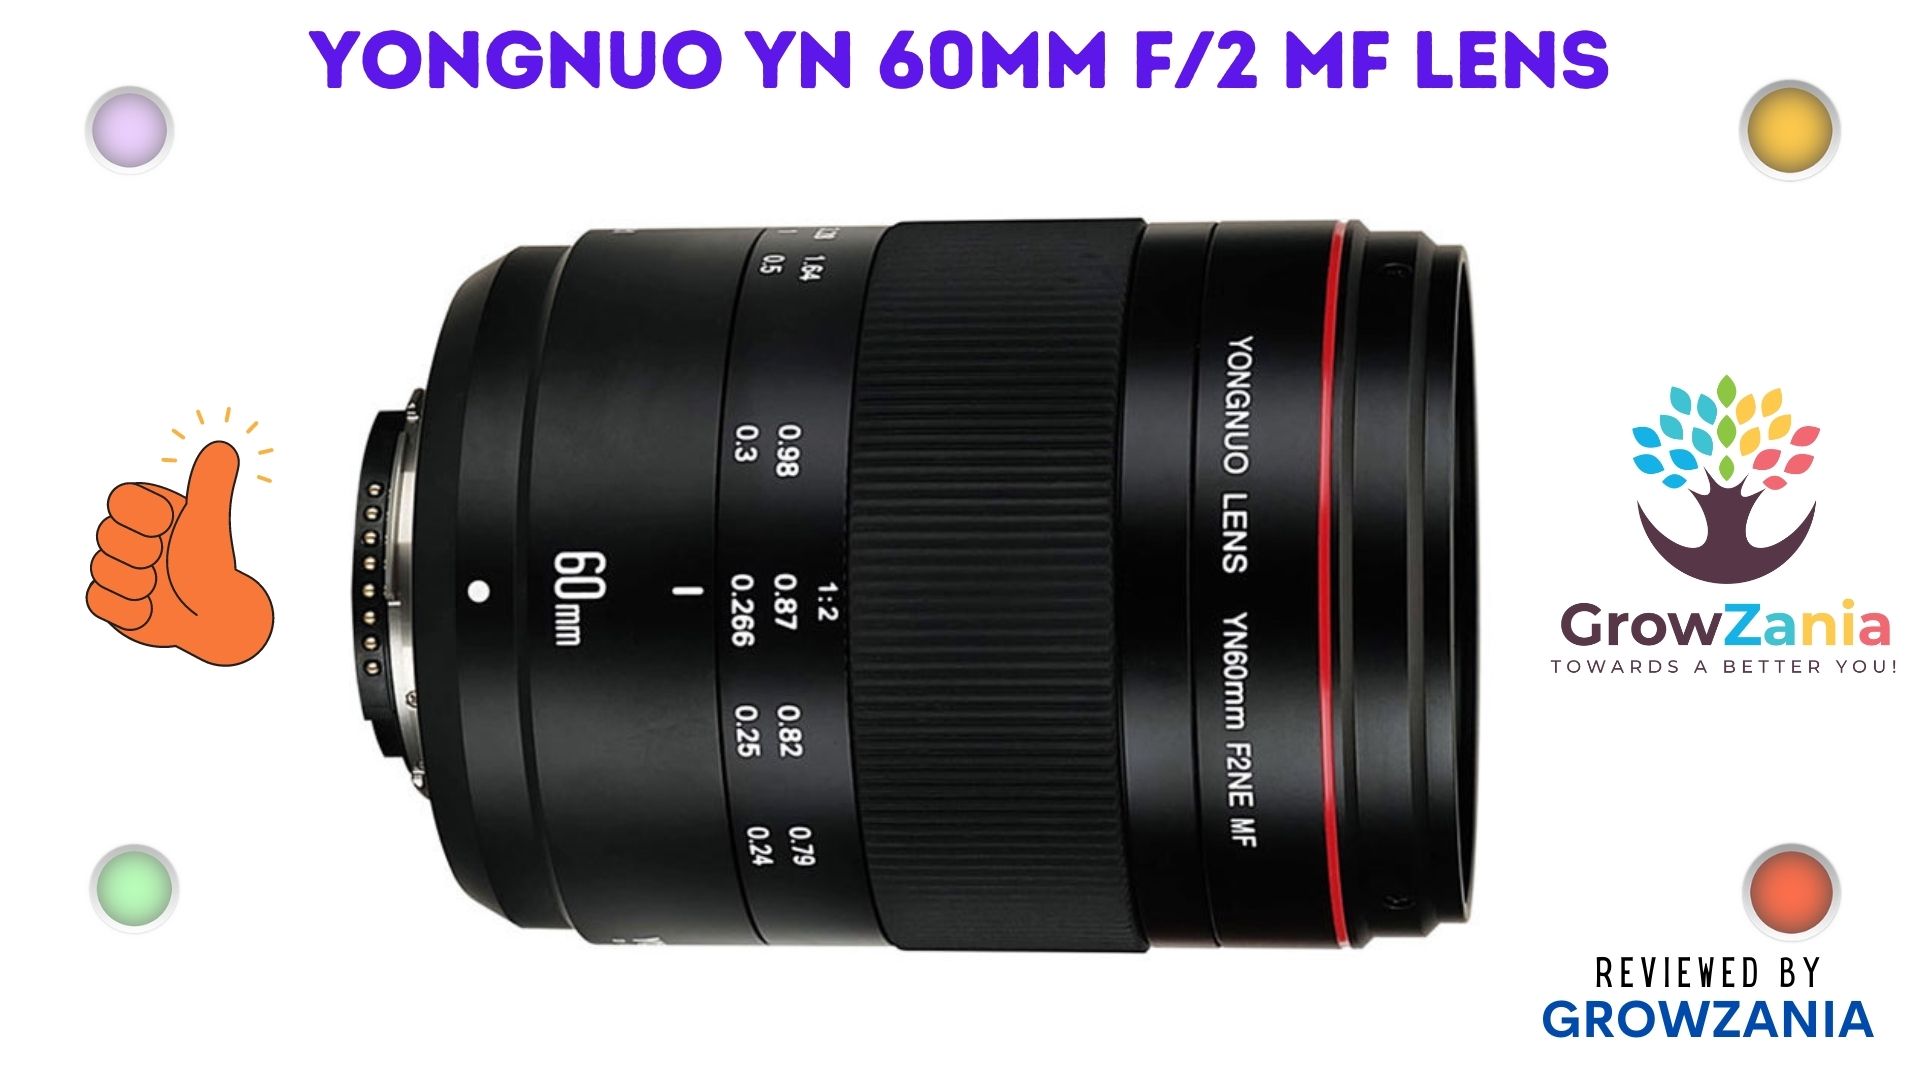 Yongnuo YN 60mm f/2 MF Lens